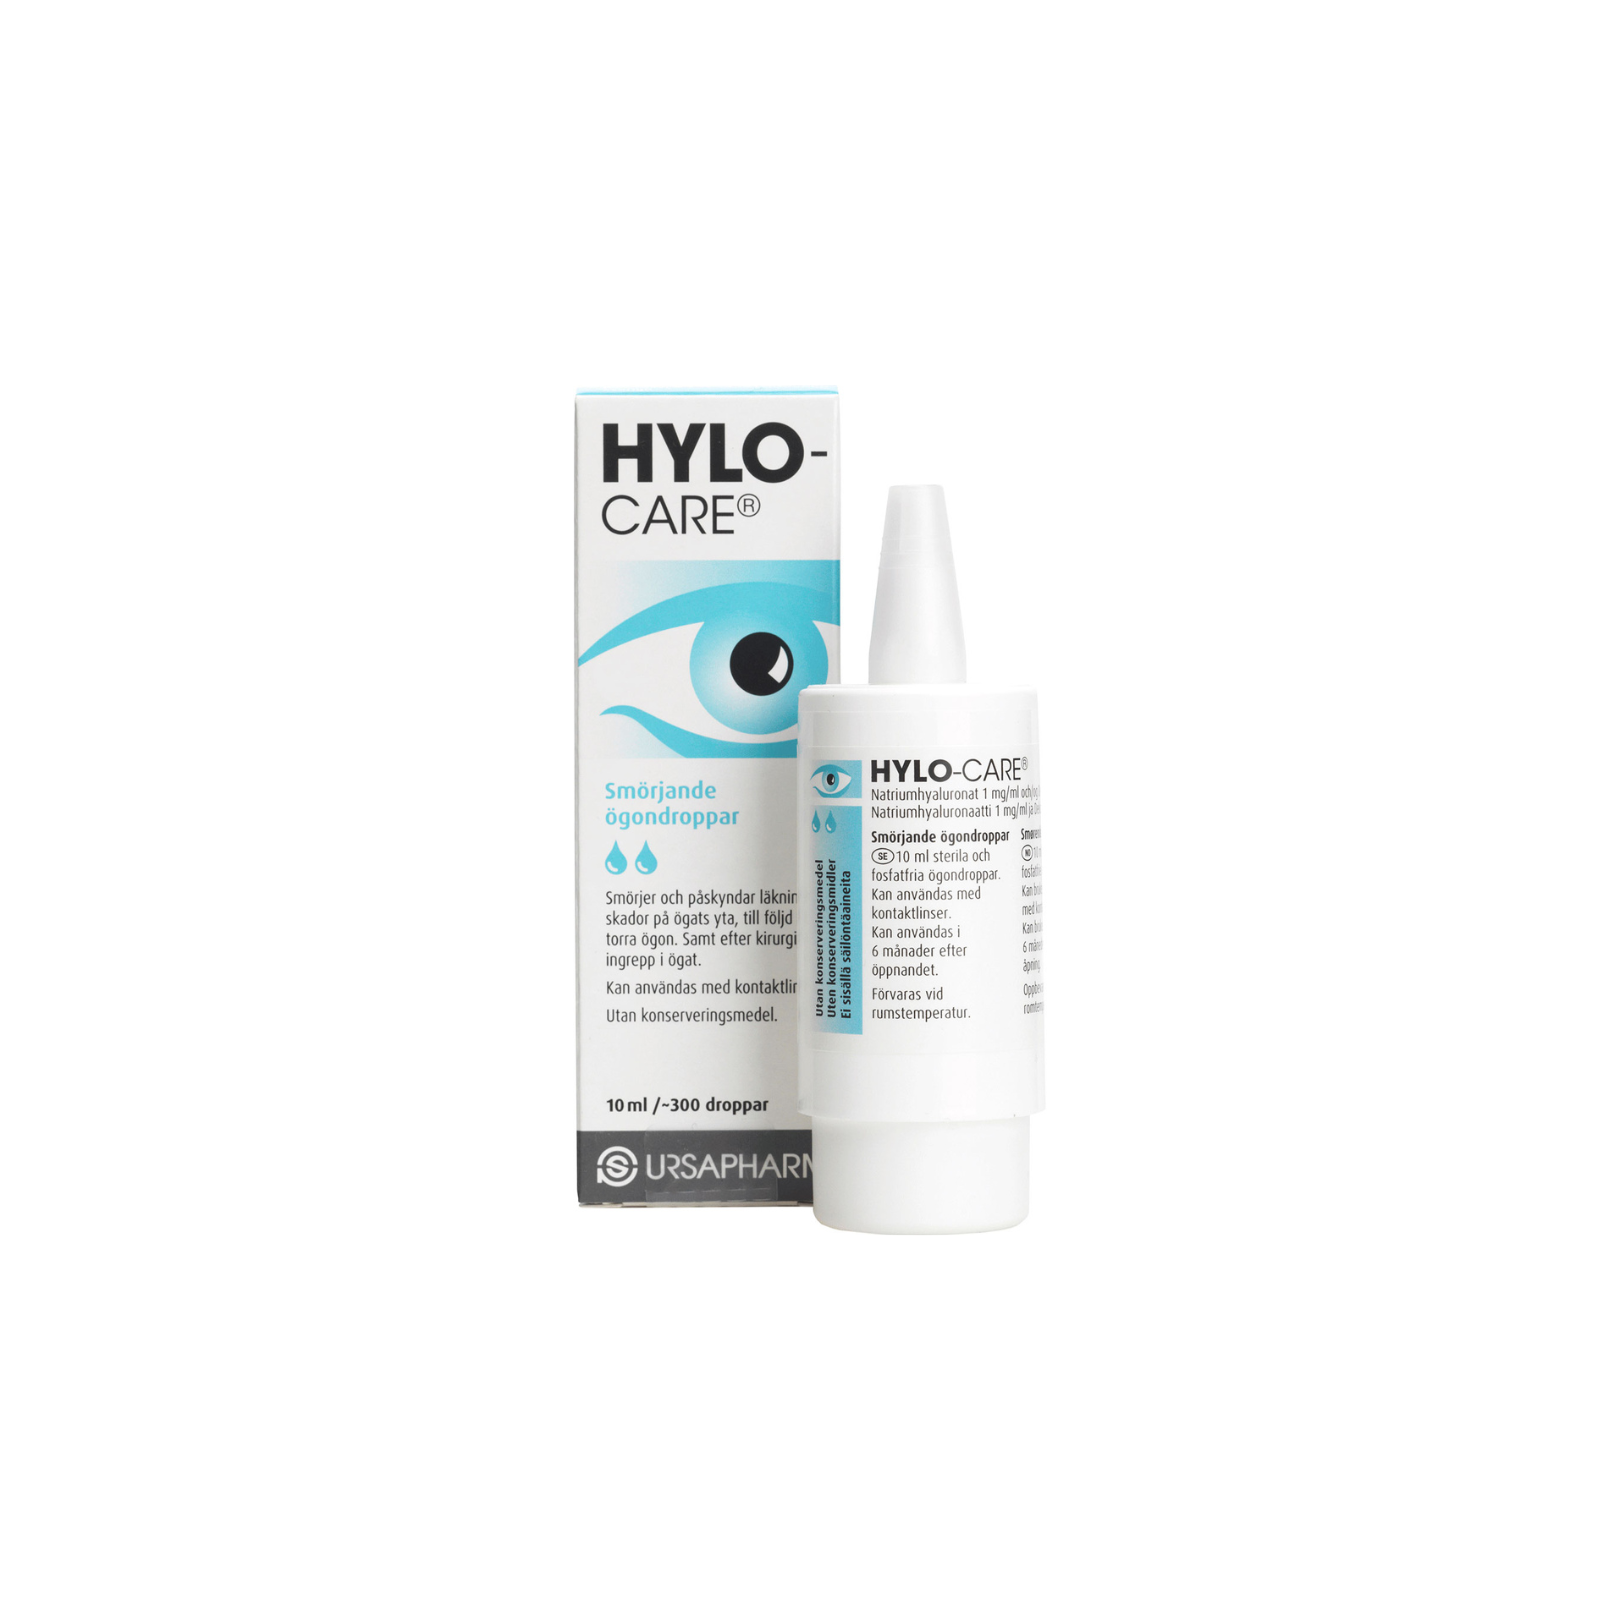 Hylo-Care - Eye drops